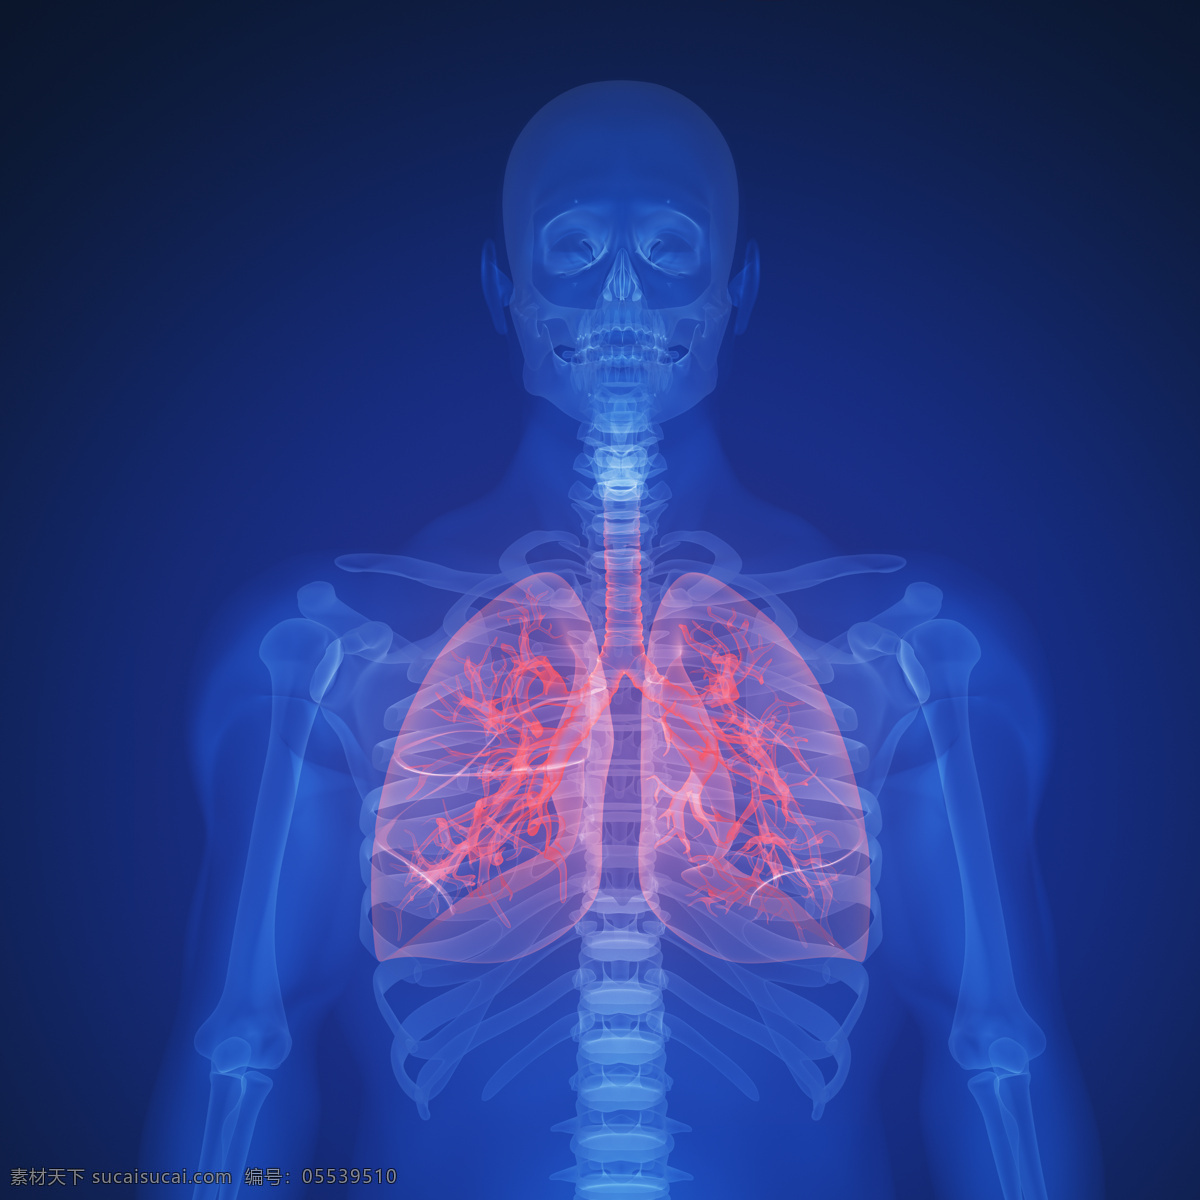 肺部 x 光 透视图 医疗主题 人体 x光 图像 医疗护理 现代科技